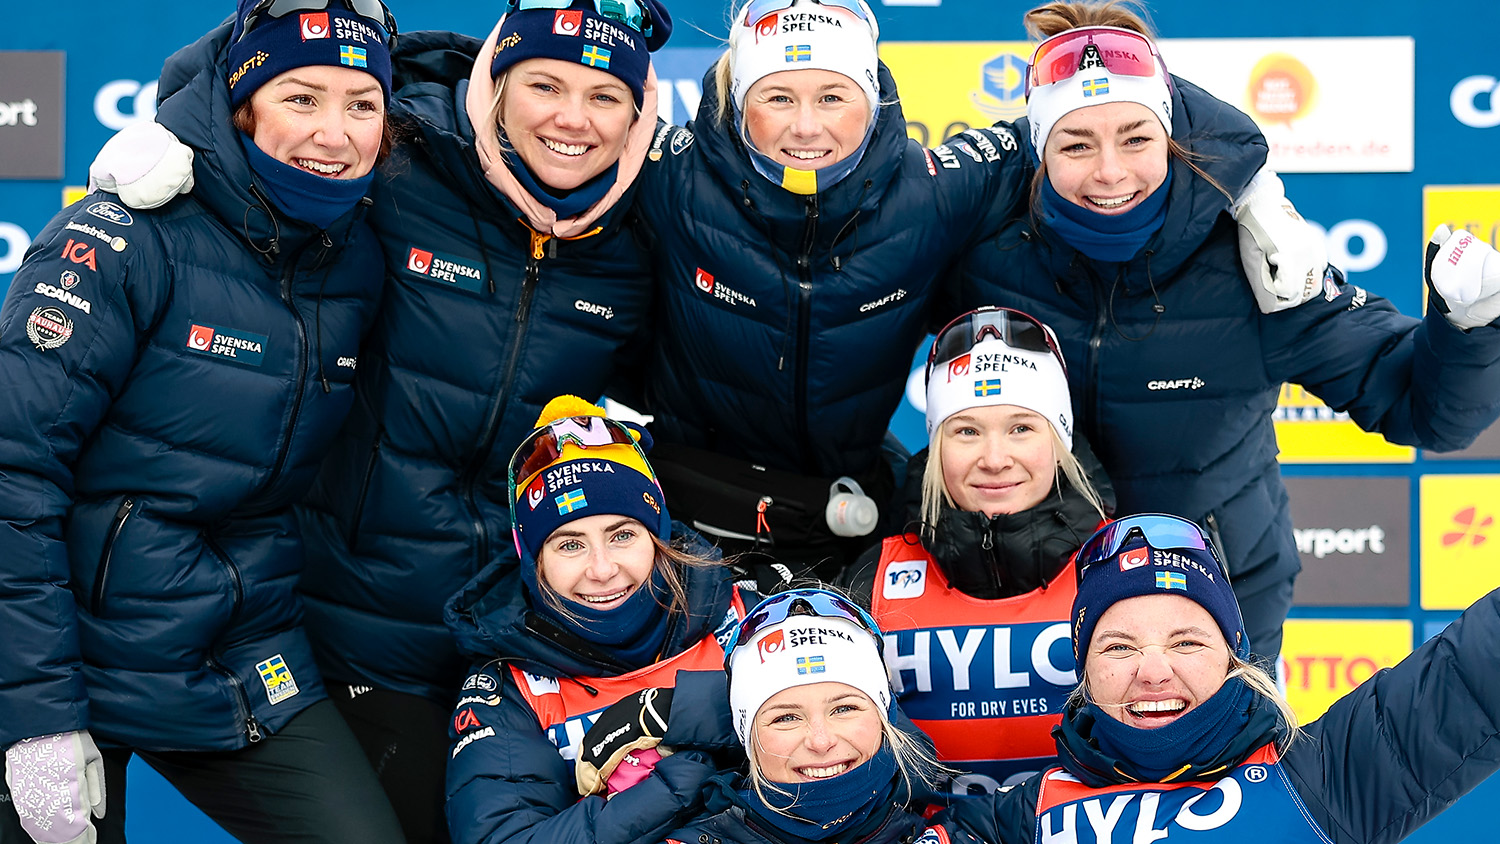 Världscuphelgen i Oberhof avrundades med vinst och fjärdeplats för Sveriges damlag. FOTO: NORDICFOCUS/BILDBYRÅN